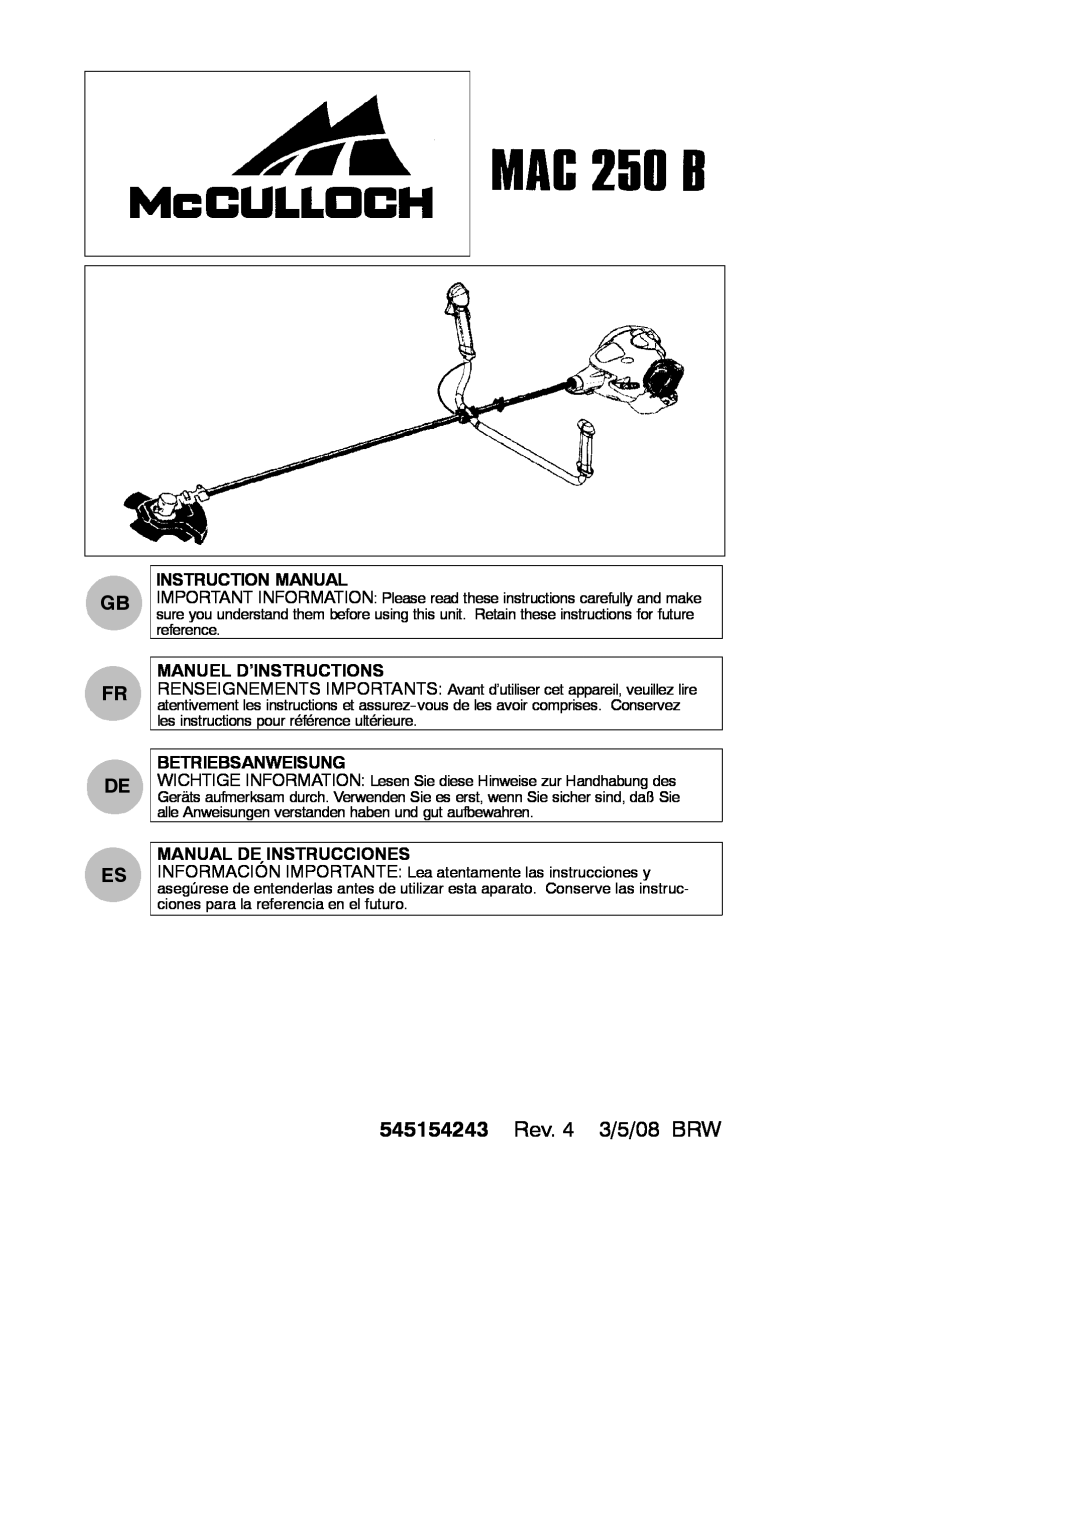 McCulloch 250 B instruction manual Manuel D’Instructions, Betriebsanweisung, Manual De Instrucciones, Gb Fr De Es 